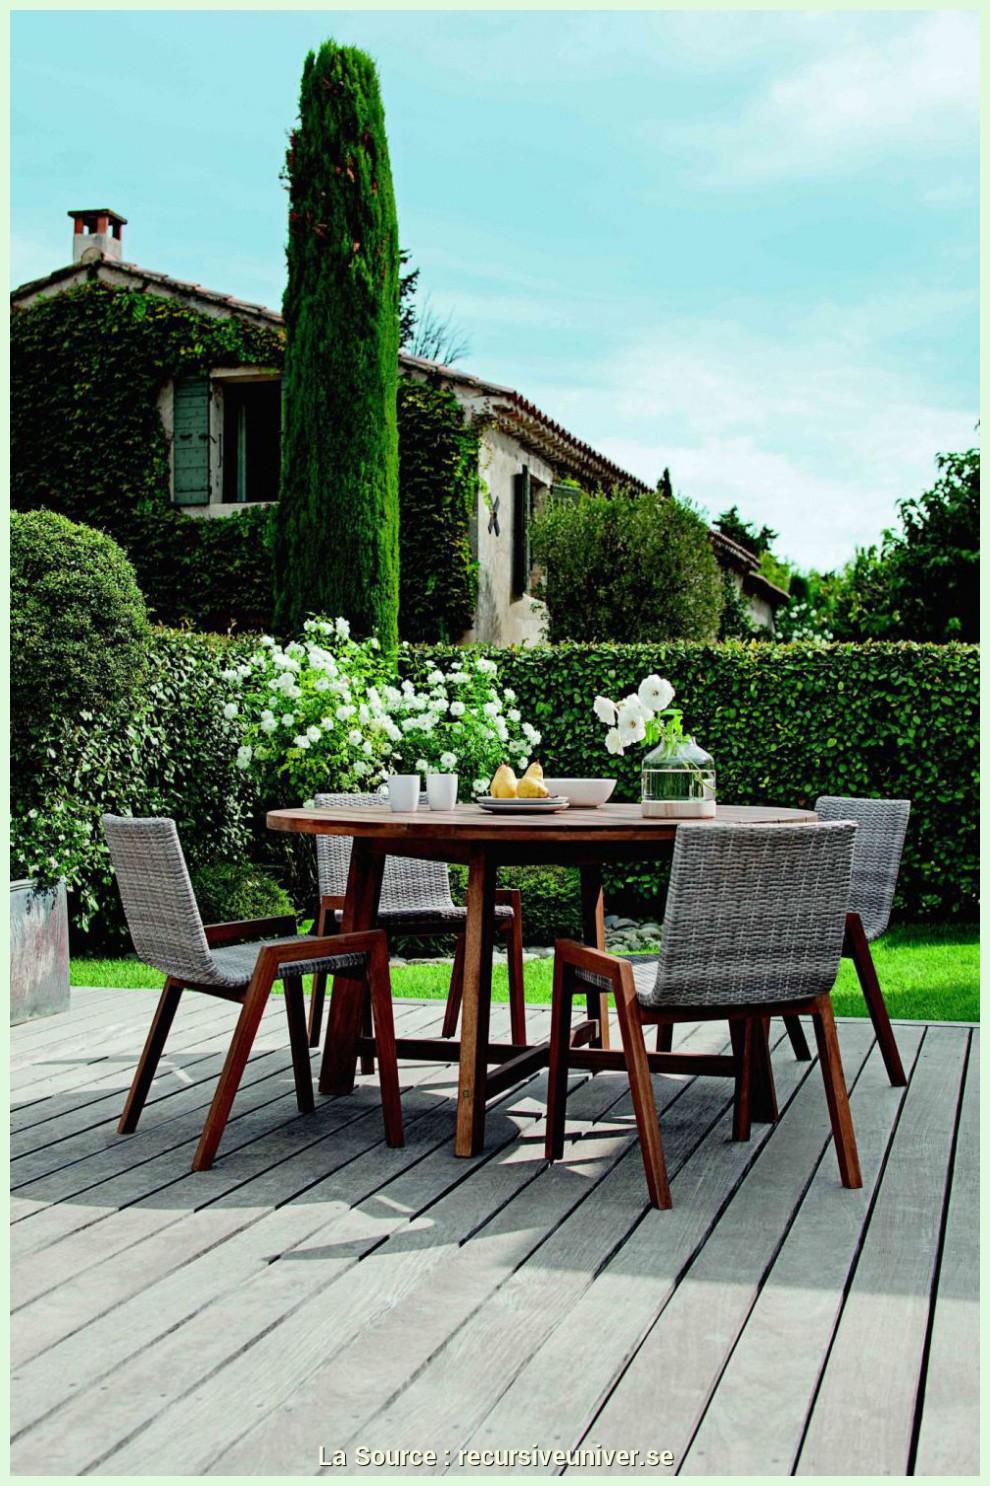 Salon De Jardin Hesperide solde Beau Table Terrasse Ikea